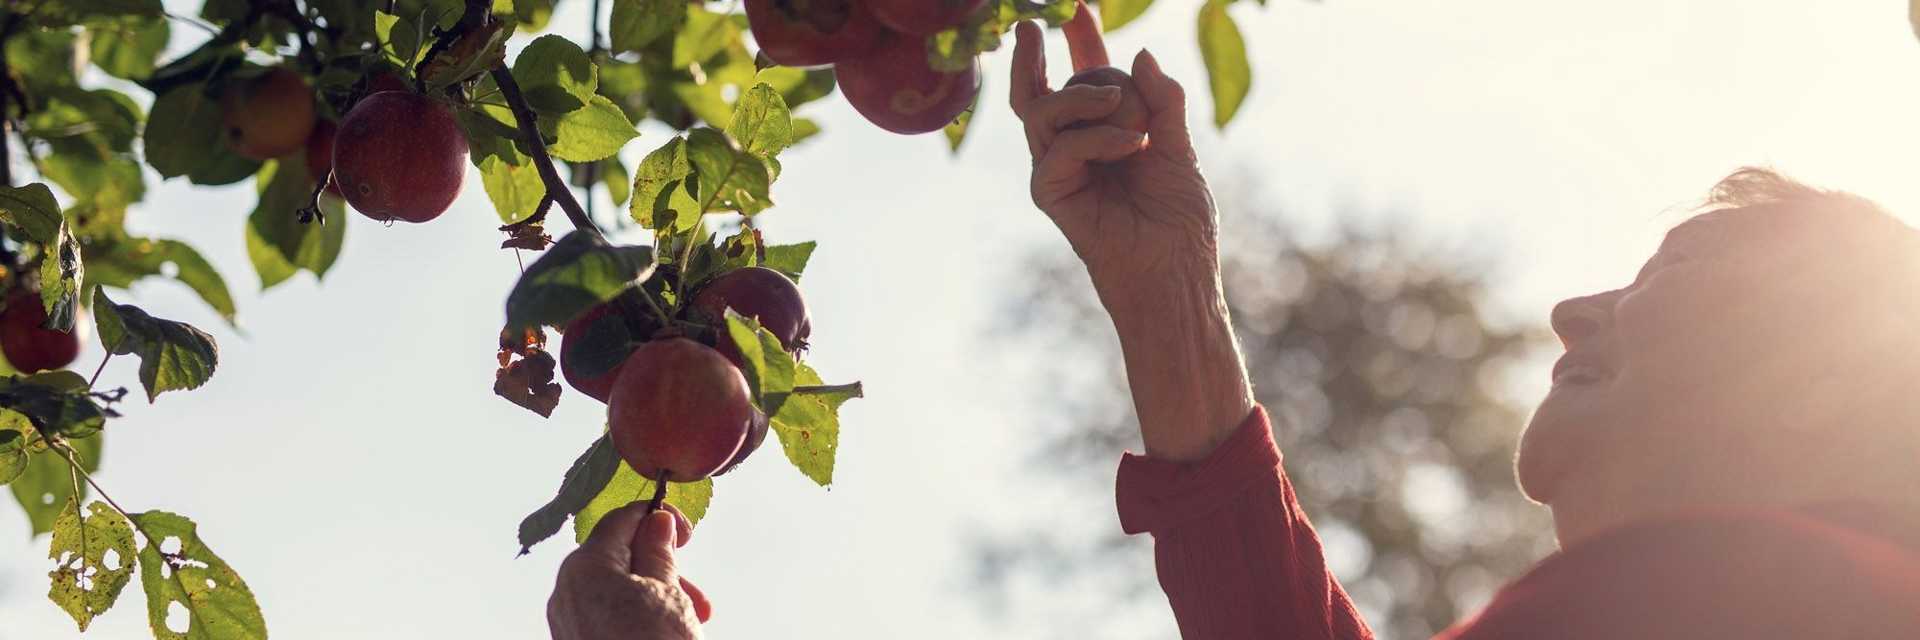 En smilende beboer kigger og plukker på de røde æbler på æbletræet